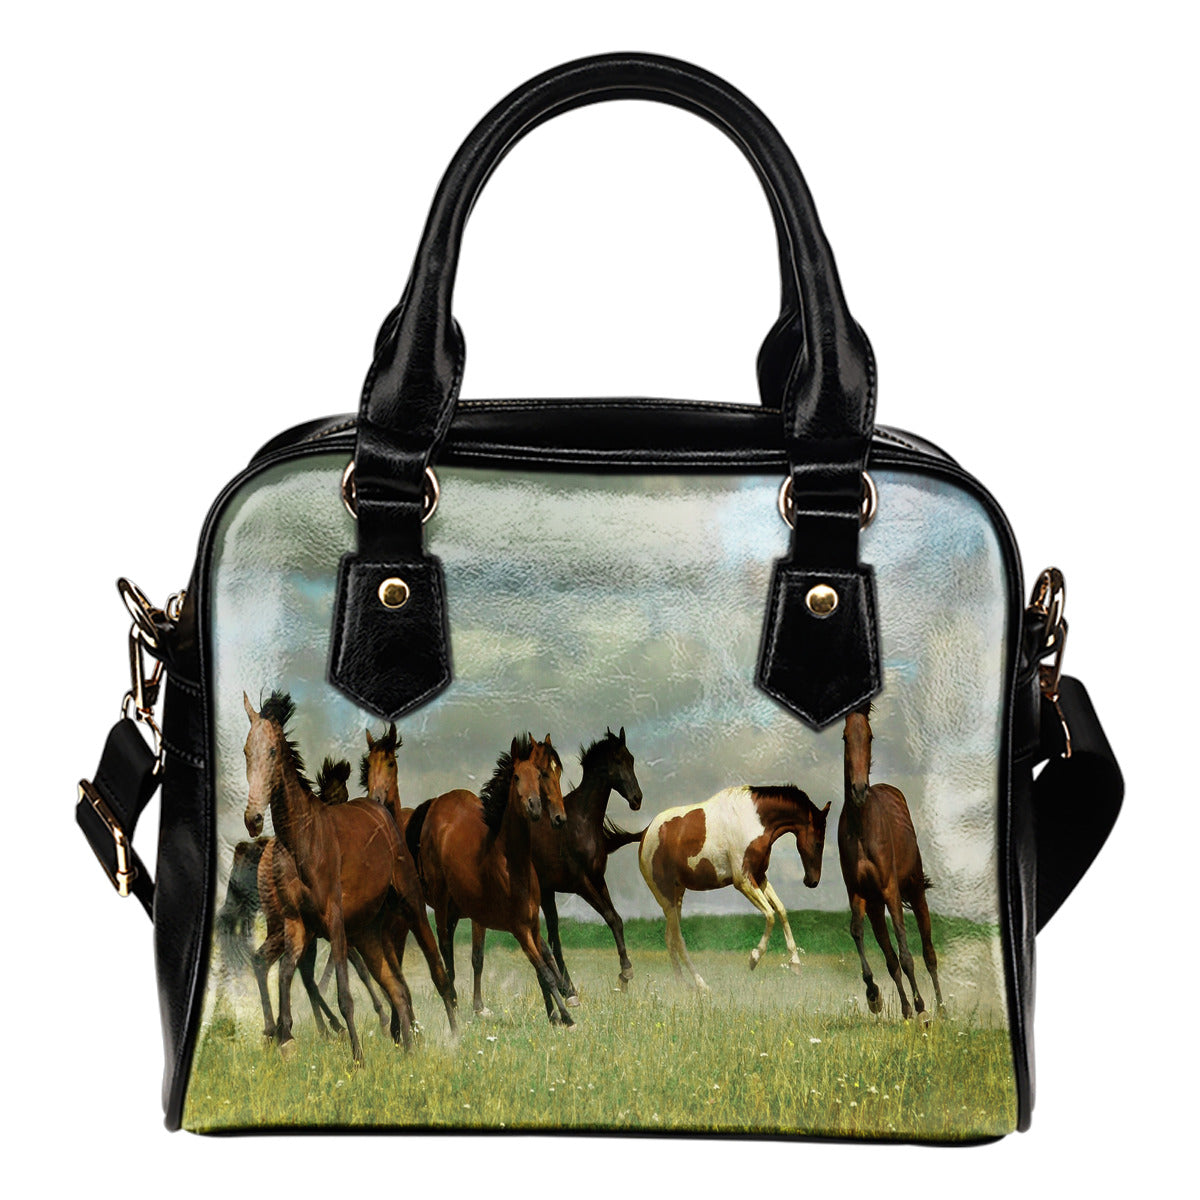 Horses Running Free Shoulder Handbag